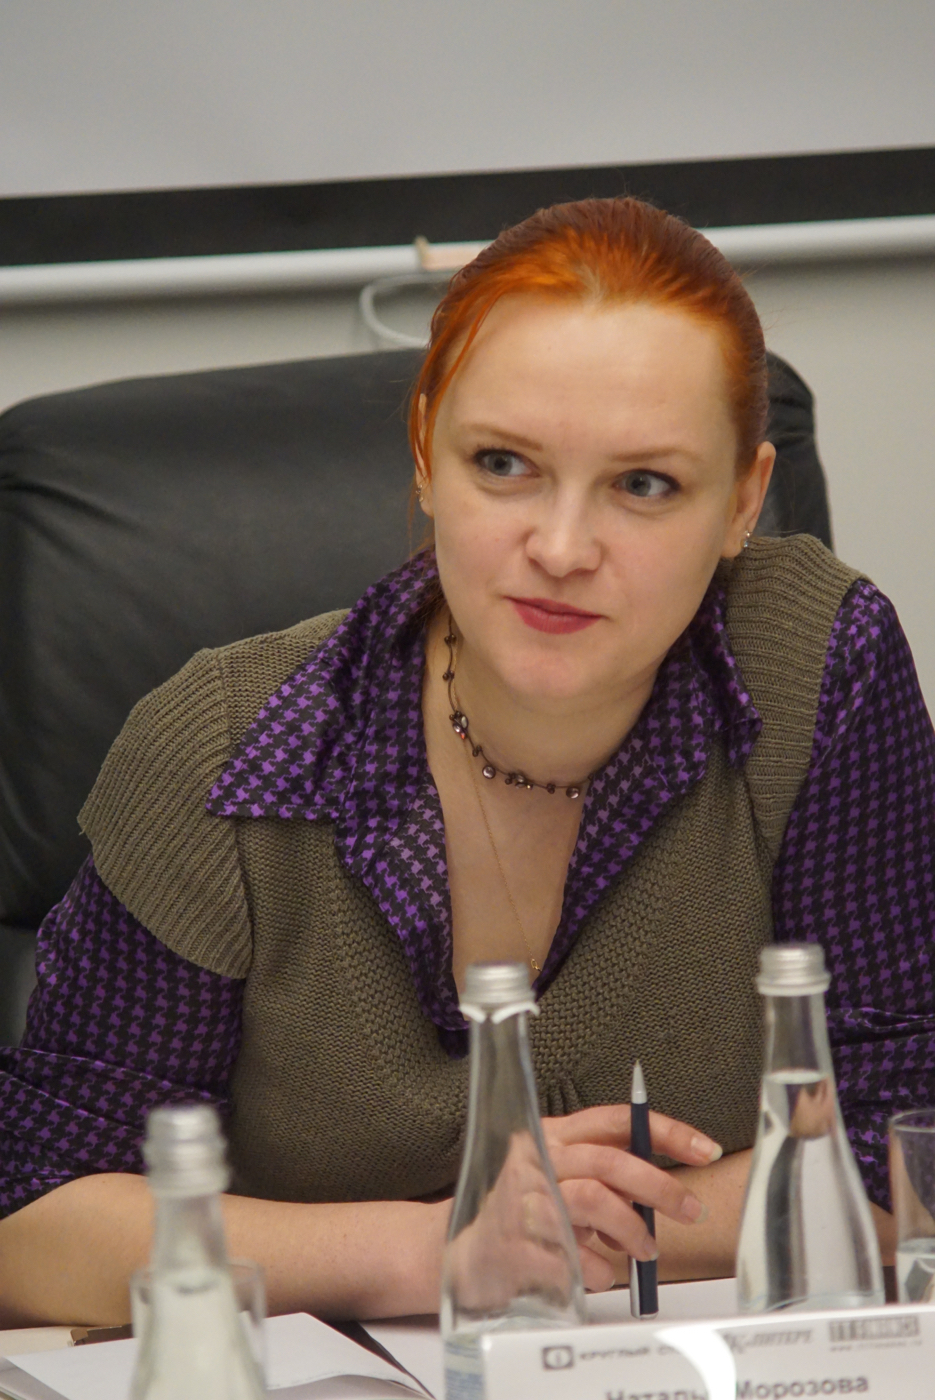 Ламбоцкая Наталья - модератор, еженедельник 